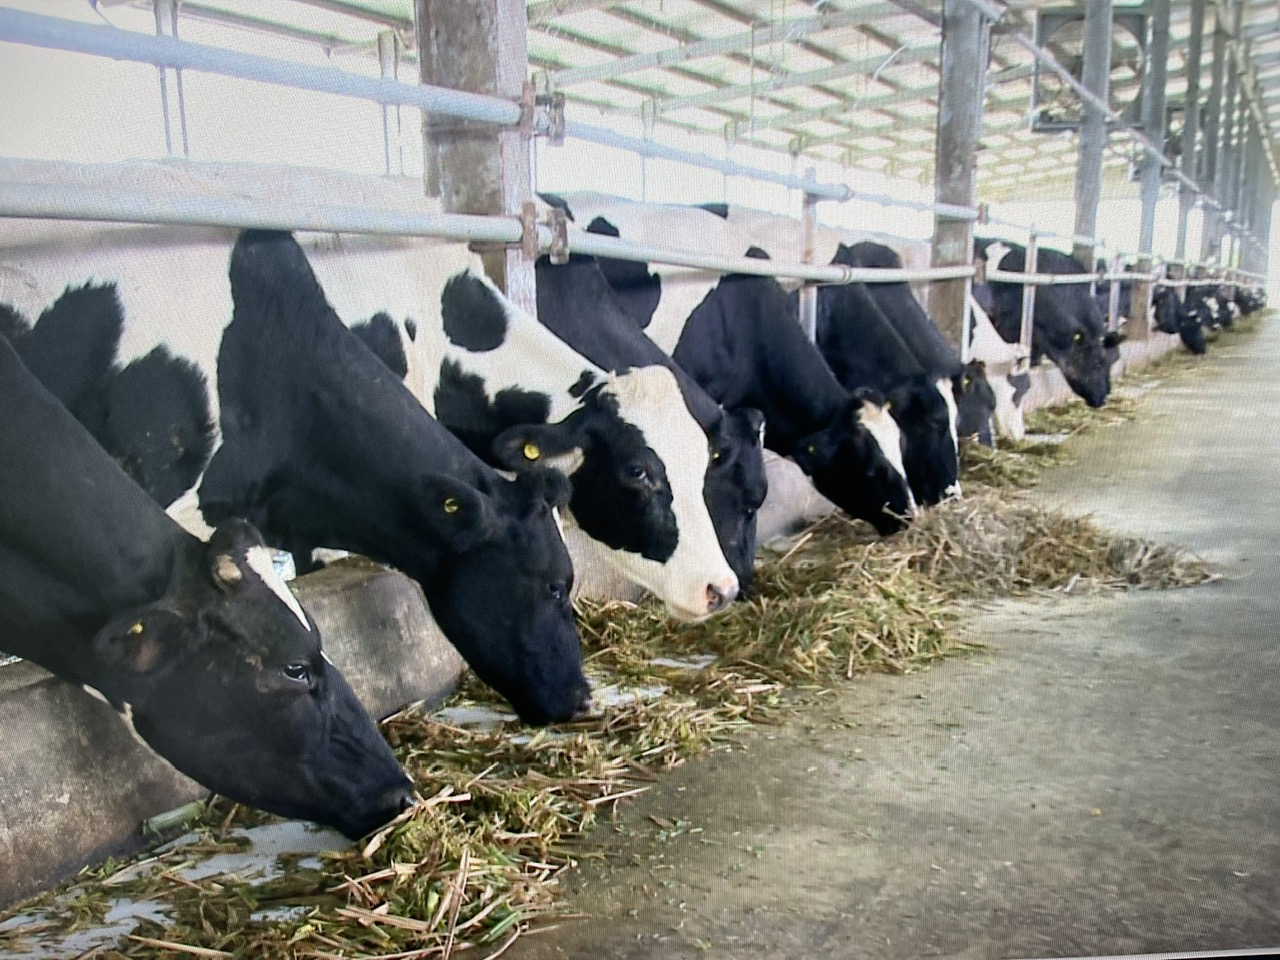 Nhờ ứng dụng công nghệ cao vào sản xuất, bò sinh trưởng phát triển ổn định, cho chất lượng sữa tốt. Ảnh: Trần Trung.